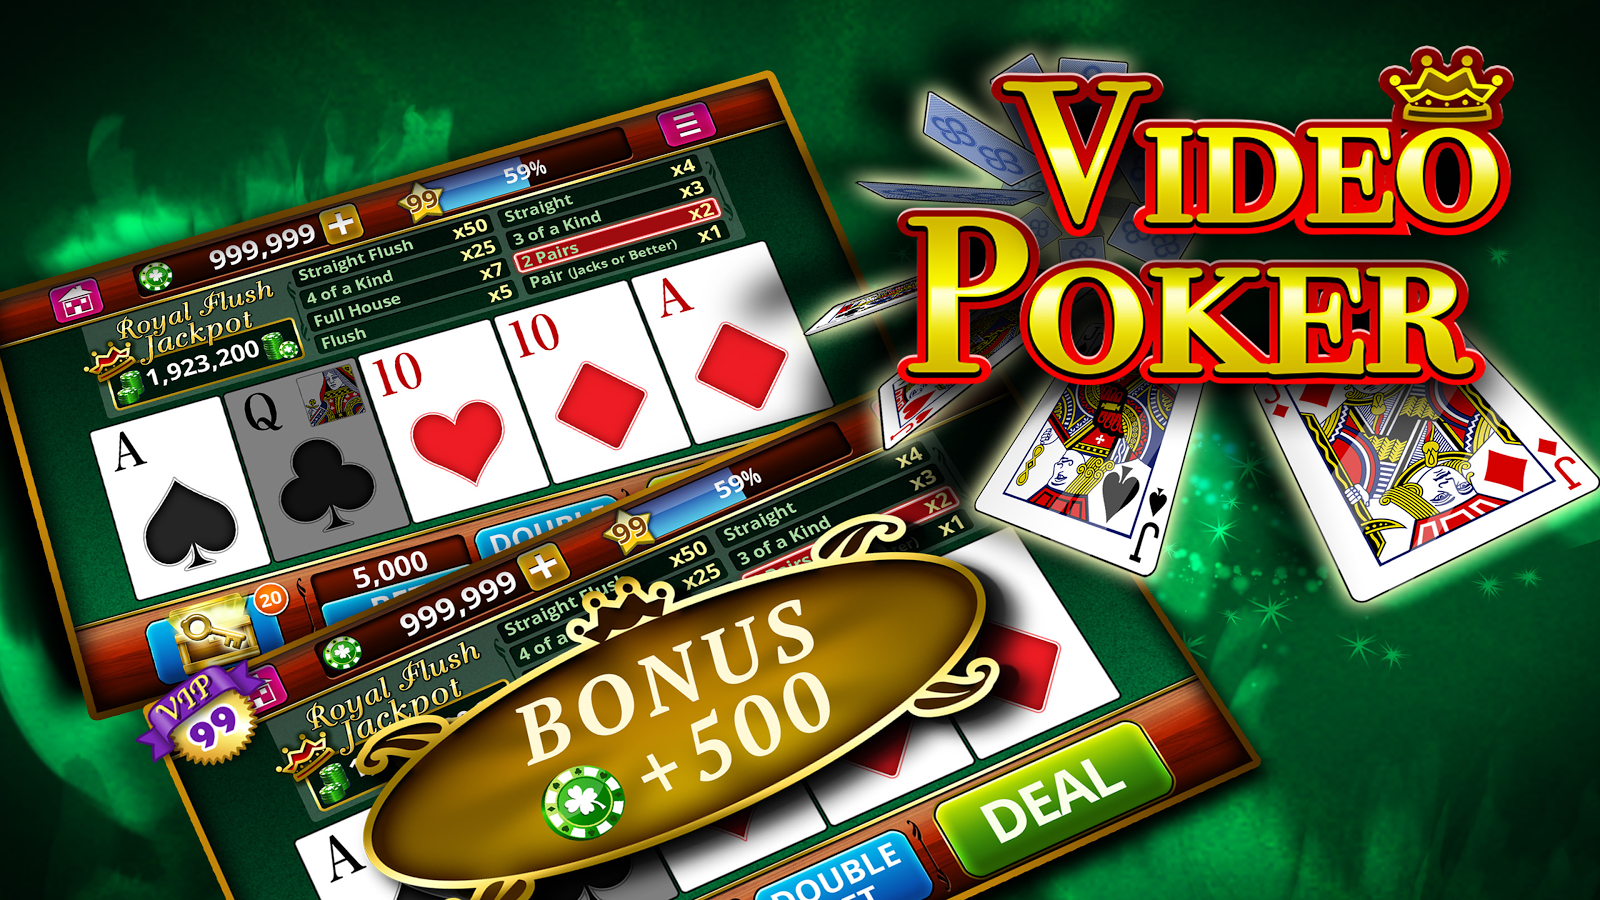 Видео покер игровые автоматы играть бесплатно слоттика игровые автоматы официальный сайт играть